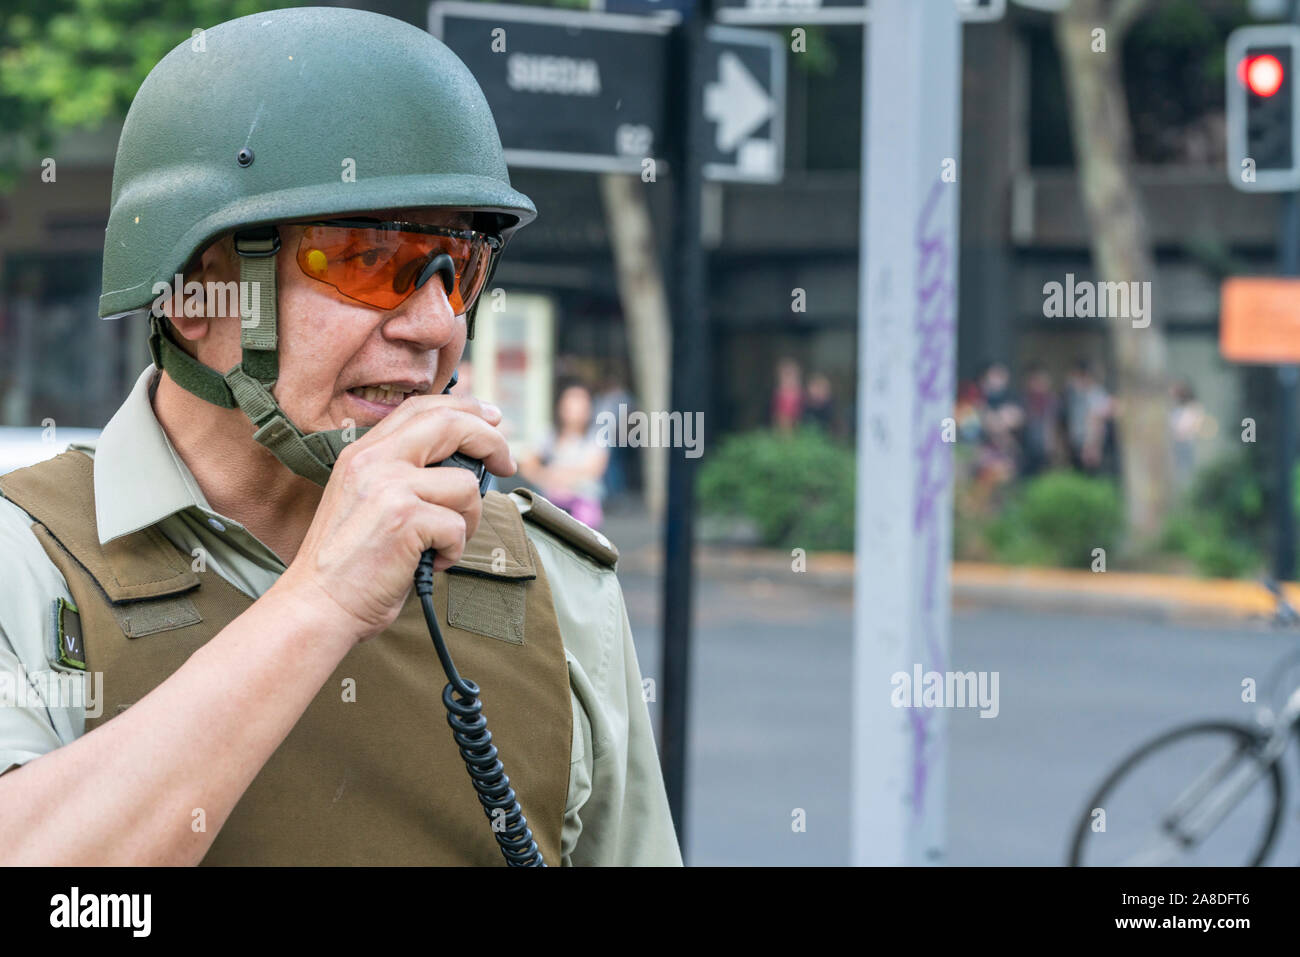 'Santiago de Cile Cile 6 novembre 2019 Carabineros funzionario di polizia ritratto durante i recenti disordini e scontri tra polizia e manifestanti Foto Stock